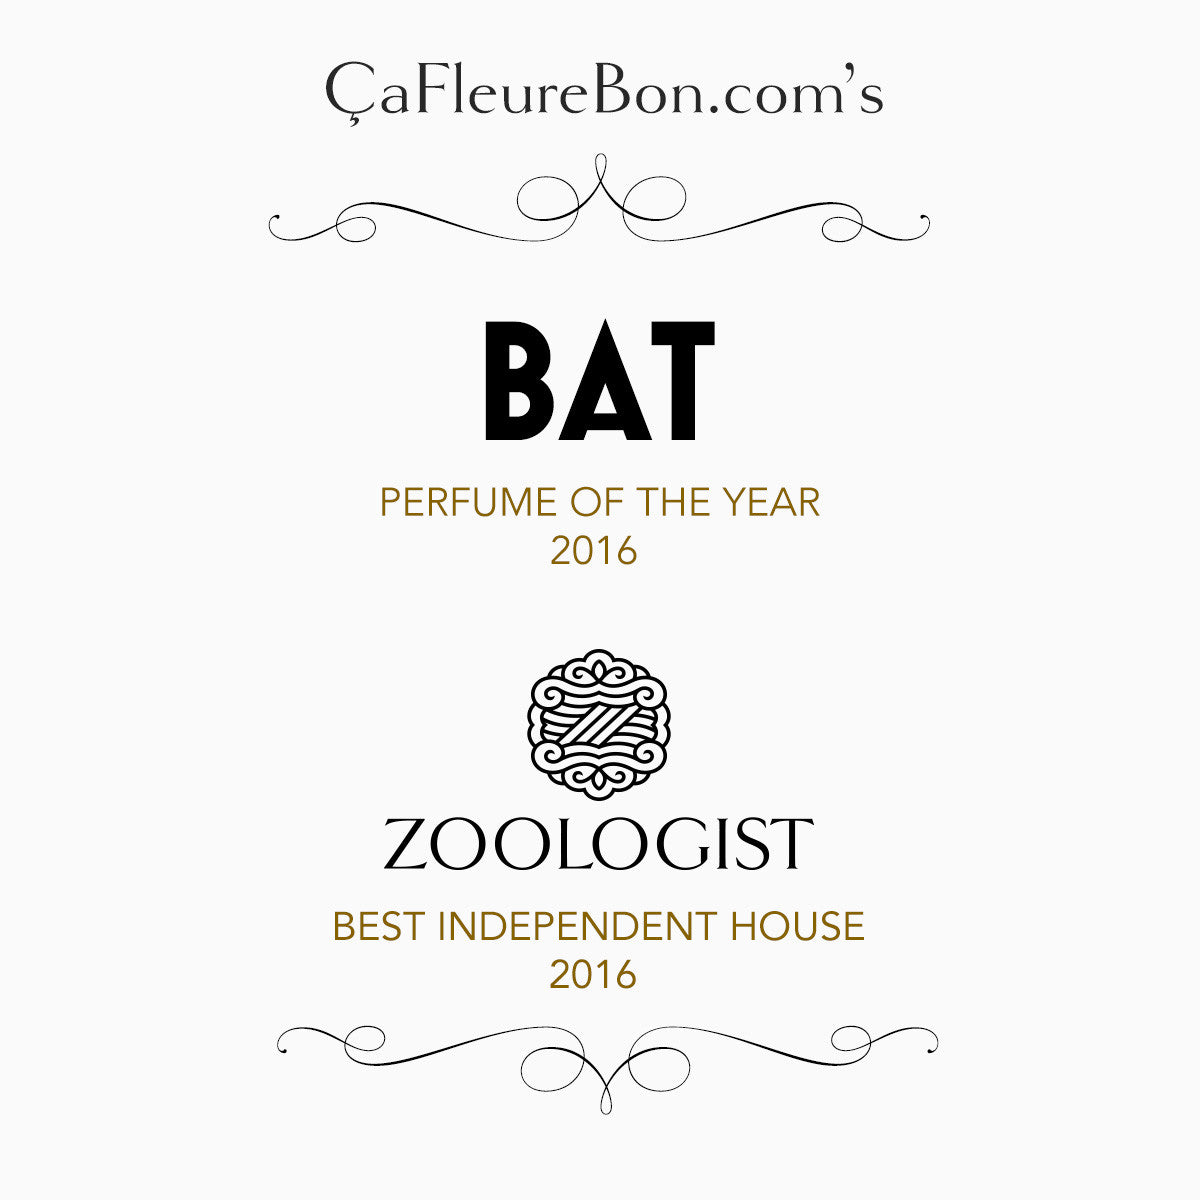 ÇaFleureBon.com Awards Zoologist Perfumes & Bat